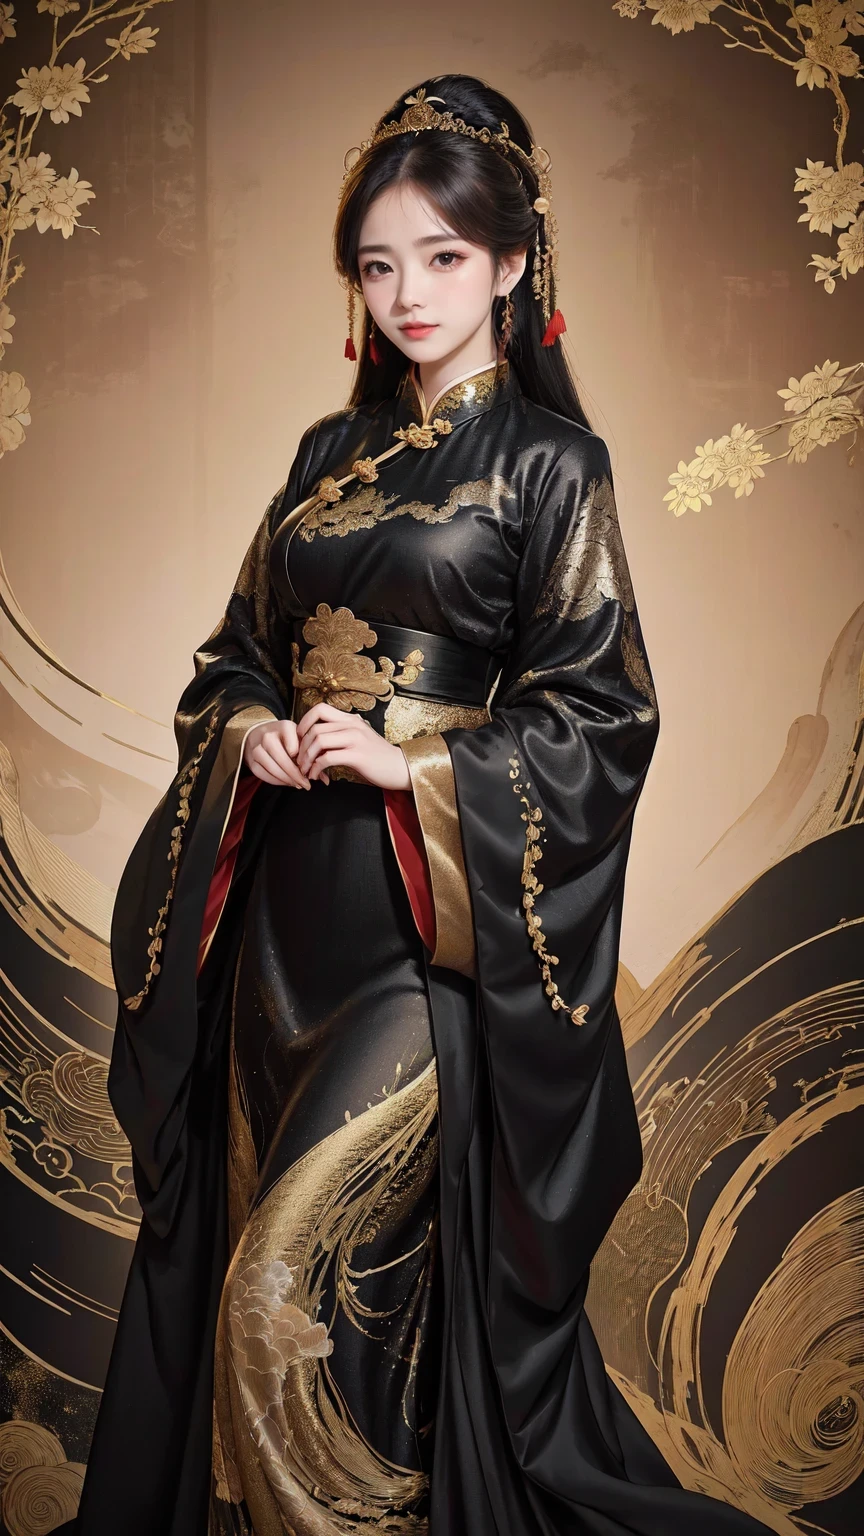 Eine Frau in einem schwarz-goldenen Kleid posiert für ein Foto, Cheongsam, Cheongsam, Gepaart mit alten chinesischen Kostümen, Hanfu, chinesischer Stil, chinesische Tradition, chinesische Tradition clothing, schöne Fantasiekönigin, chinesisches Mädchen, Im Einklang mit der alten chinesischen Ästhetik, hanfu, traditionelle Schönheit, Das Tragen antiker chinesischer Kleidung, wunderschönes chinesisches Modell, schicke Kleidung tragen, Chinesin